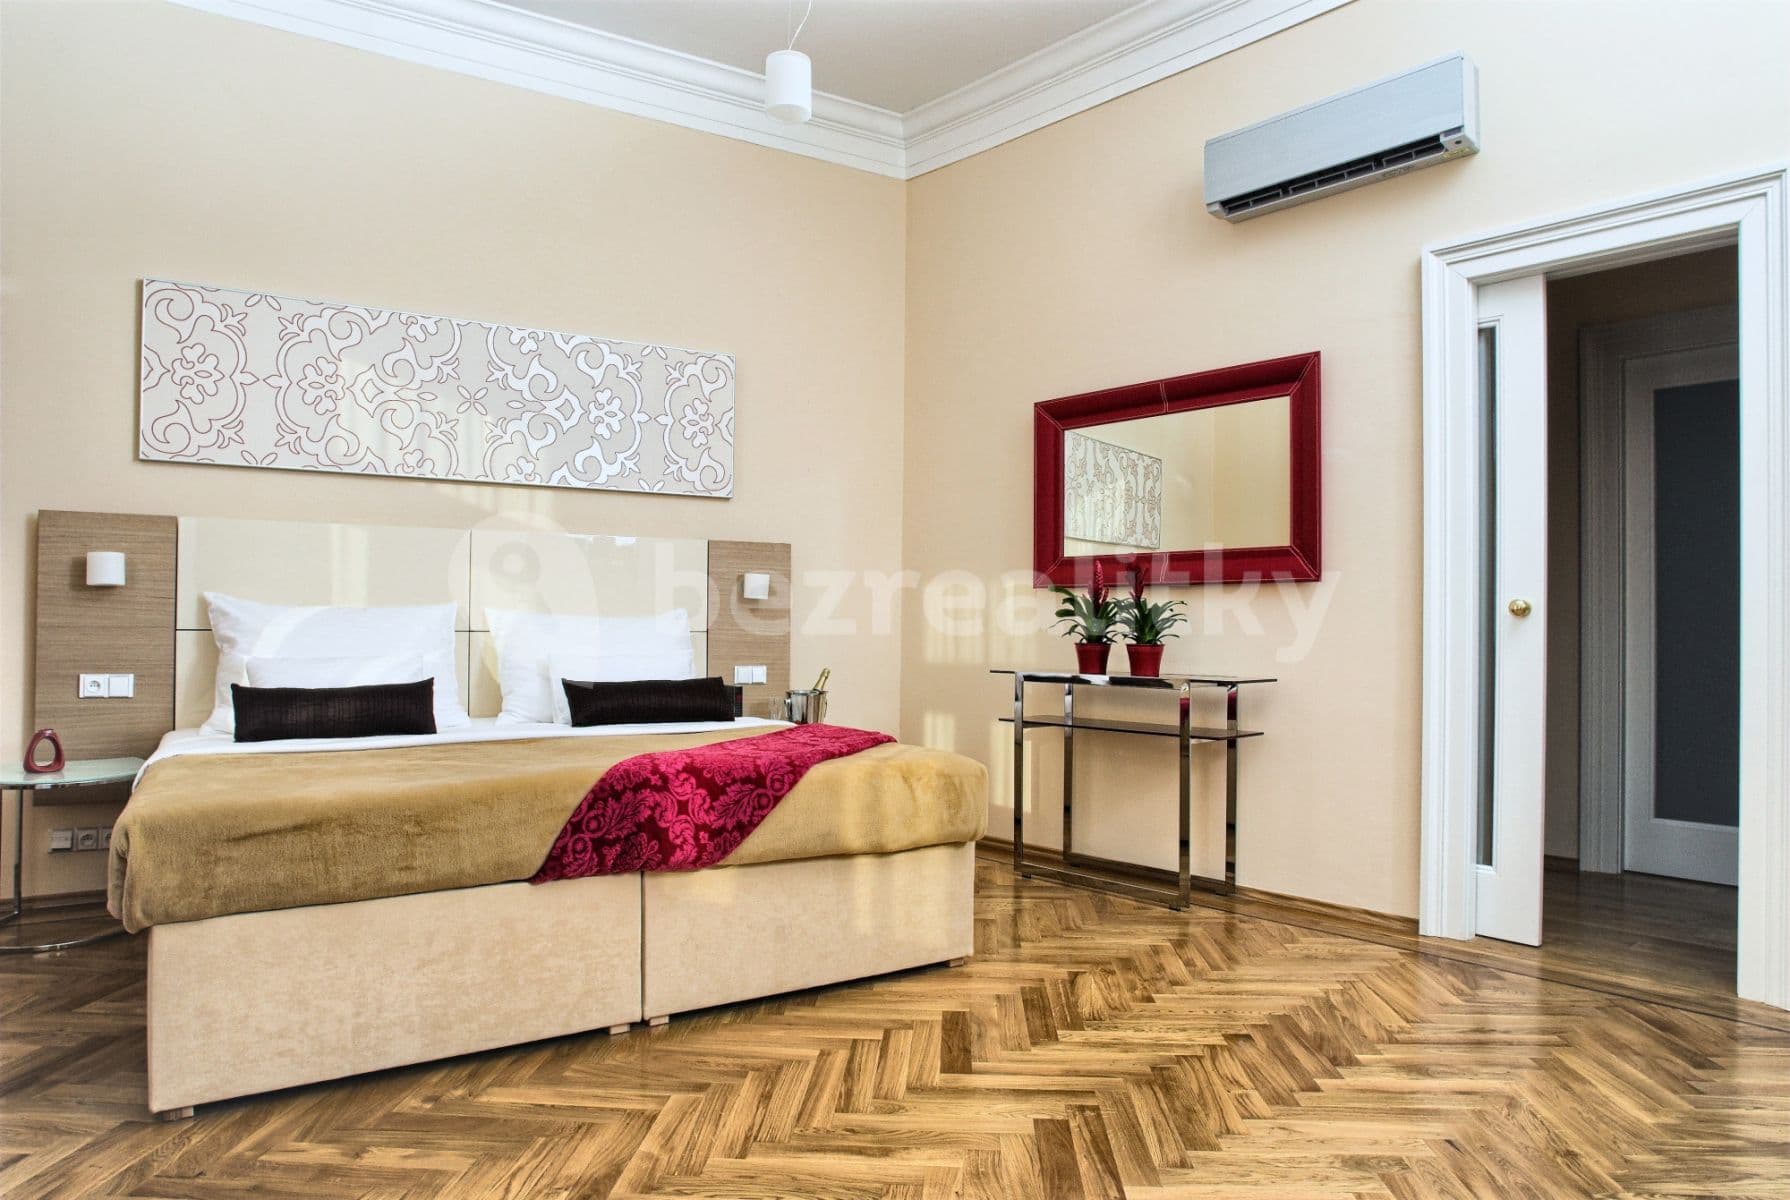 2 bedroom flat to rent, 80 m², Karoliny Světlé, Prague, Prague